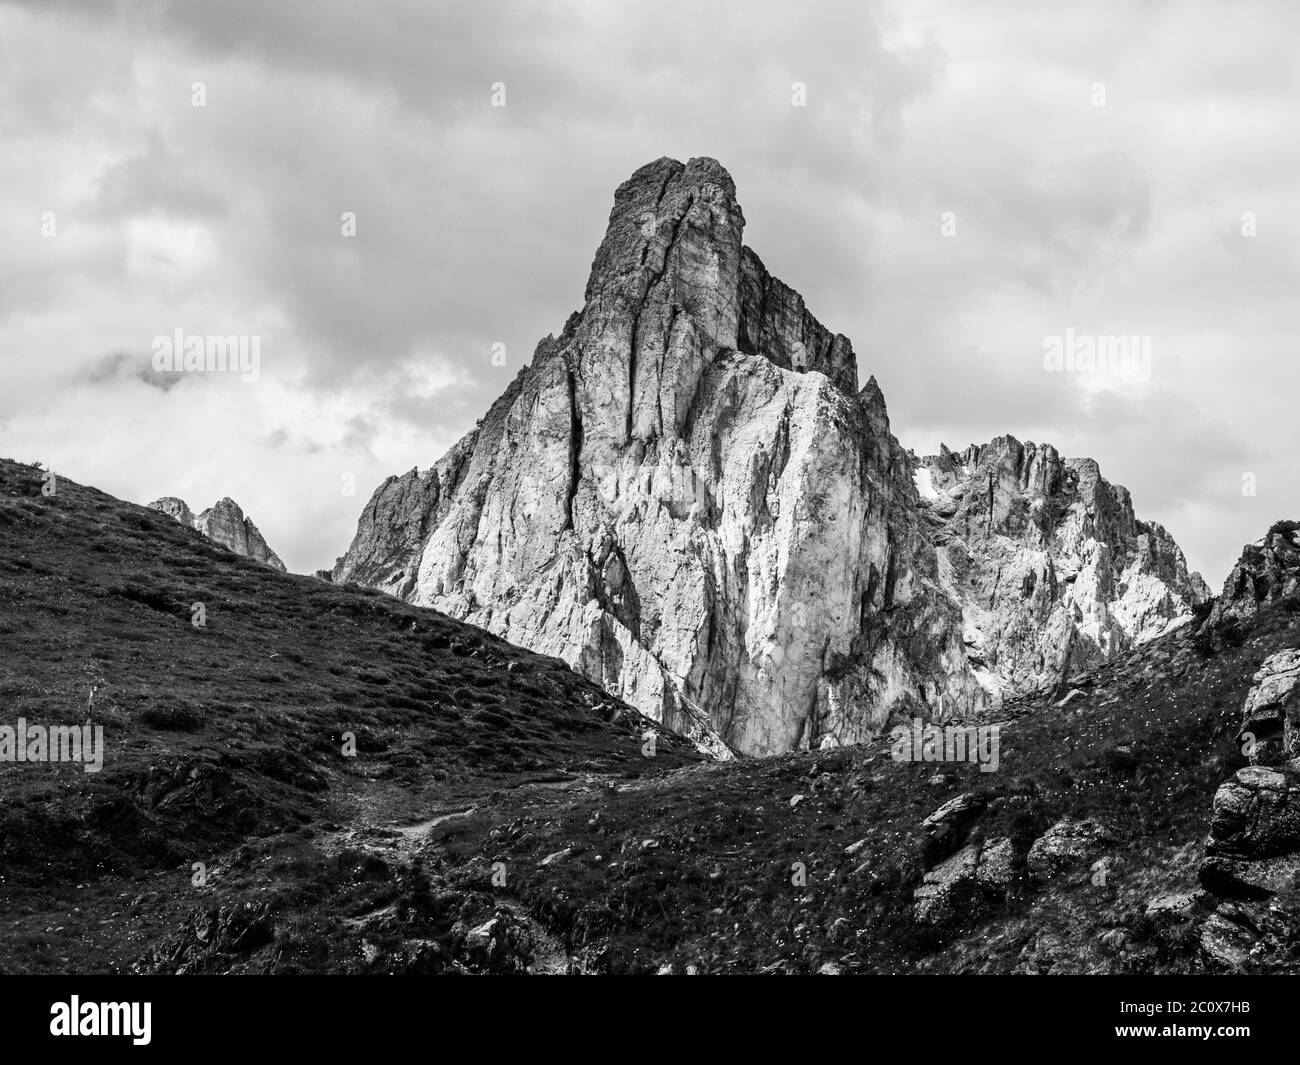 Passo Giau mit dem Gusela-Berg im Hintergrund, Dolomiten oder Dolomiti-Gebirge, Italien. Schwarzweiß-Bild. Stockfoto